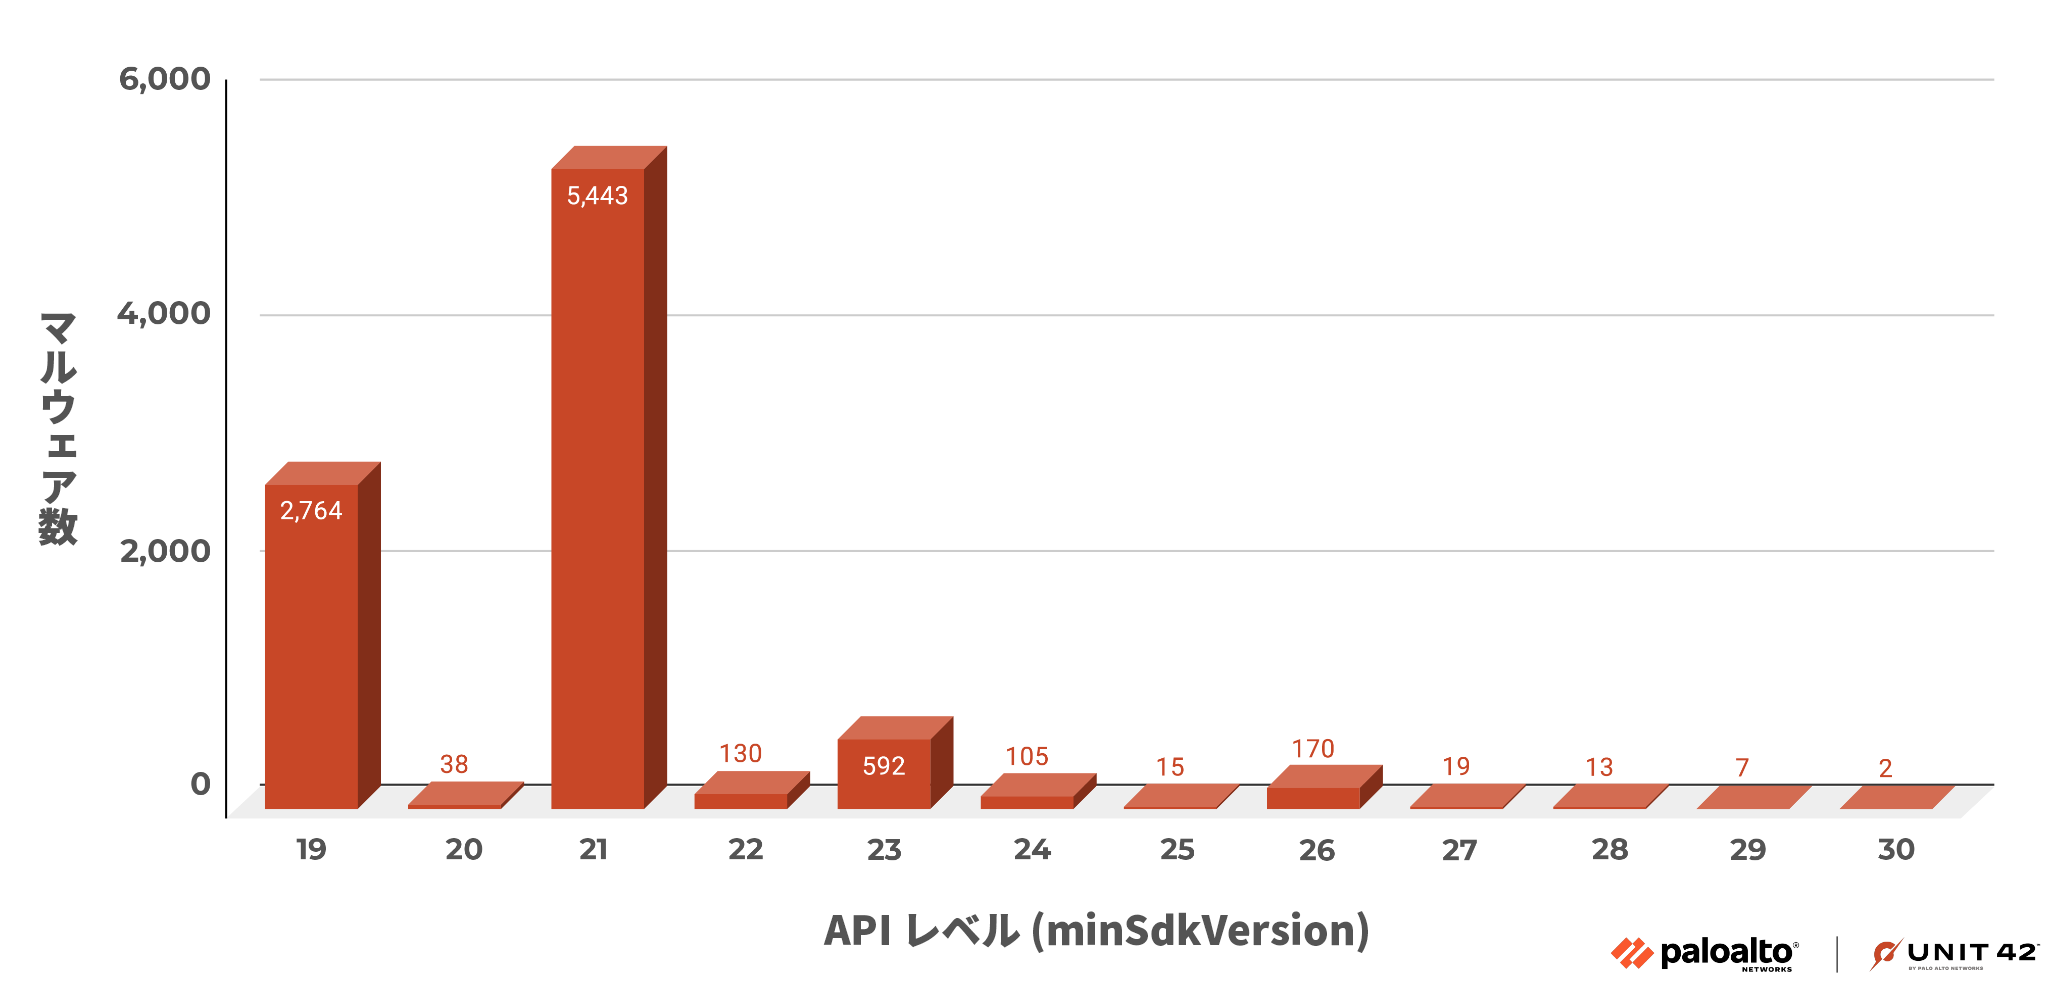 画像 3 は VirusTotal の APK マルウェア サンプルのグラフです。もっともよく利用されているのは API レベル 21 で、これは 5,000 個を超えています。次に高いのは API レベル 19 で、ほぼ 3,000 個です。その次は API レベル 23 で、これは 592 個と大幅に減少しています。